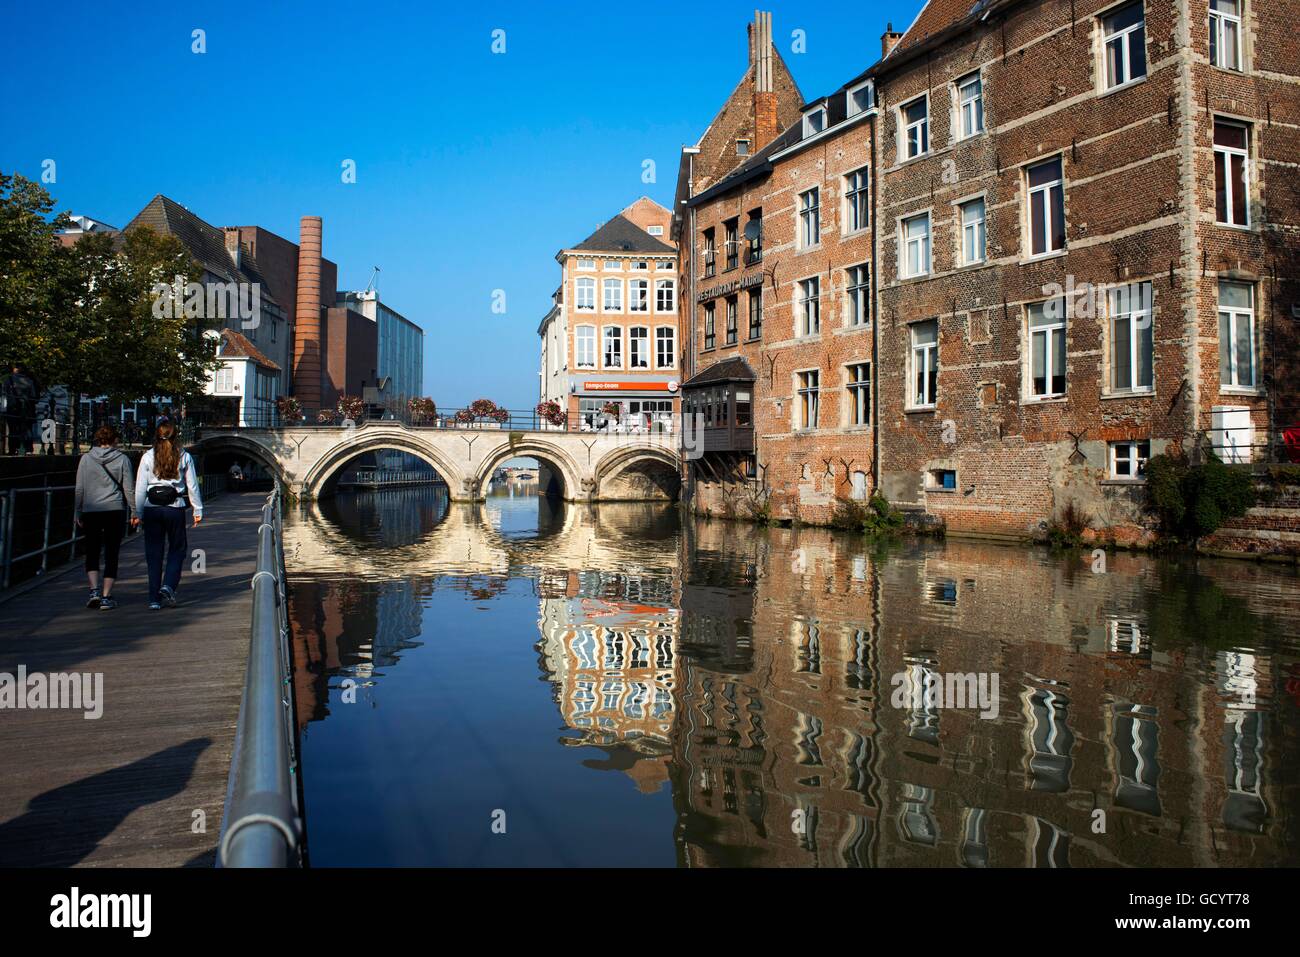 Mechelen Belgien flämische Haus Fassade außen Reisen Reiseziel Twillight Kanal Kanal Wasserstraße Ausflugsboot. Romantische Kanal. Stockfoto